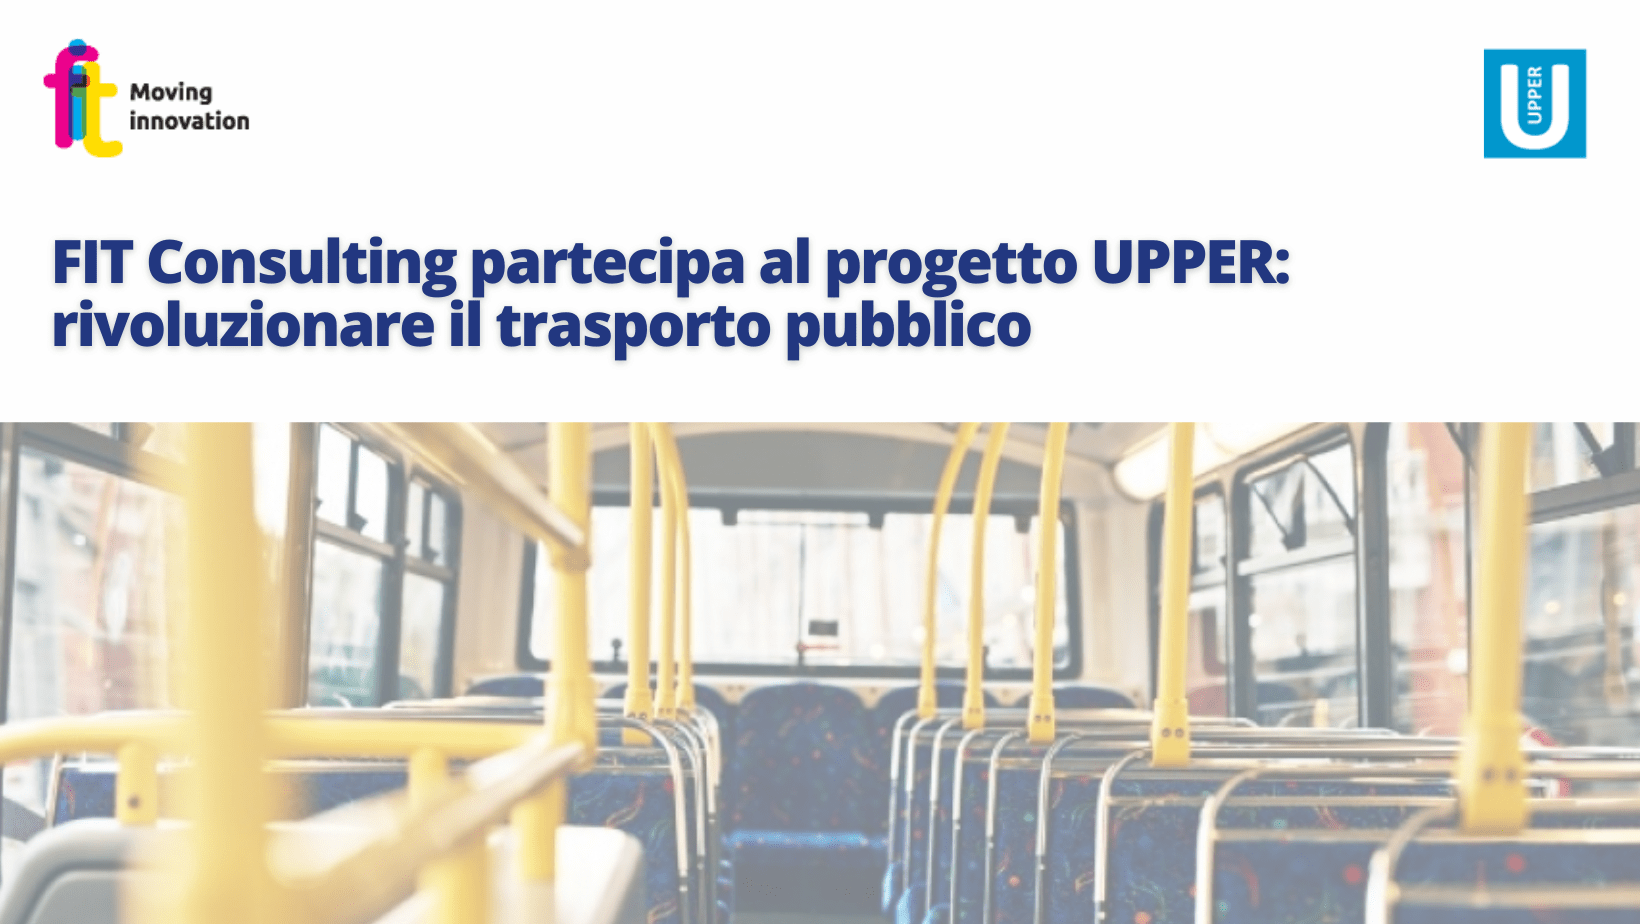 FIT Consulting partecipa al progetto della Commissione europea UPPER che mira a rivoluzionare il trasporto pubblico